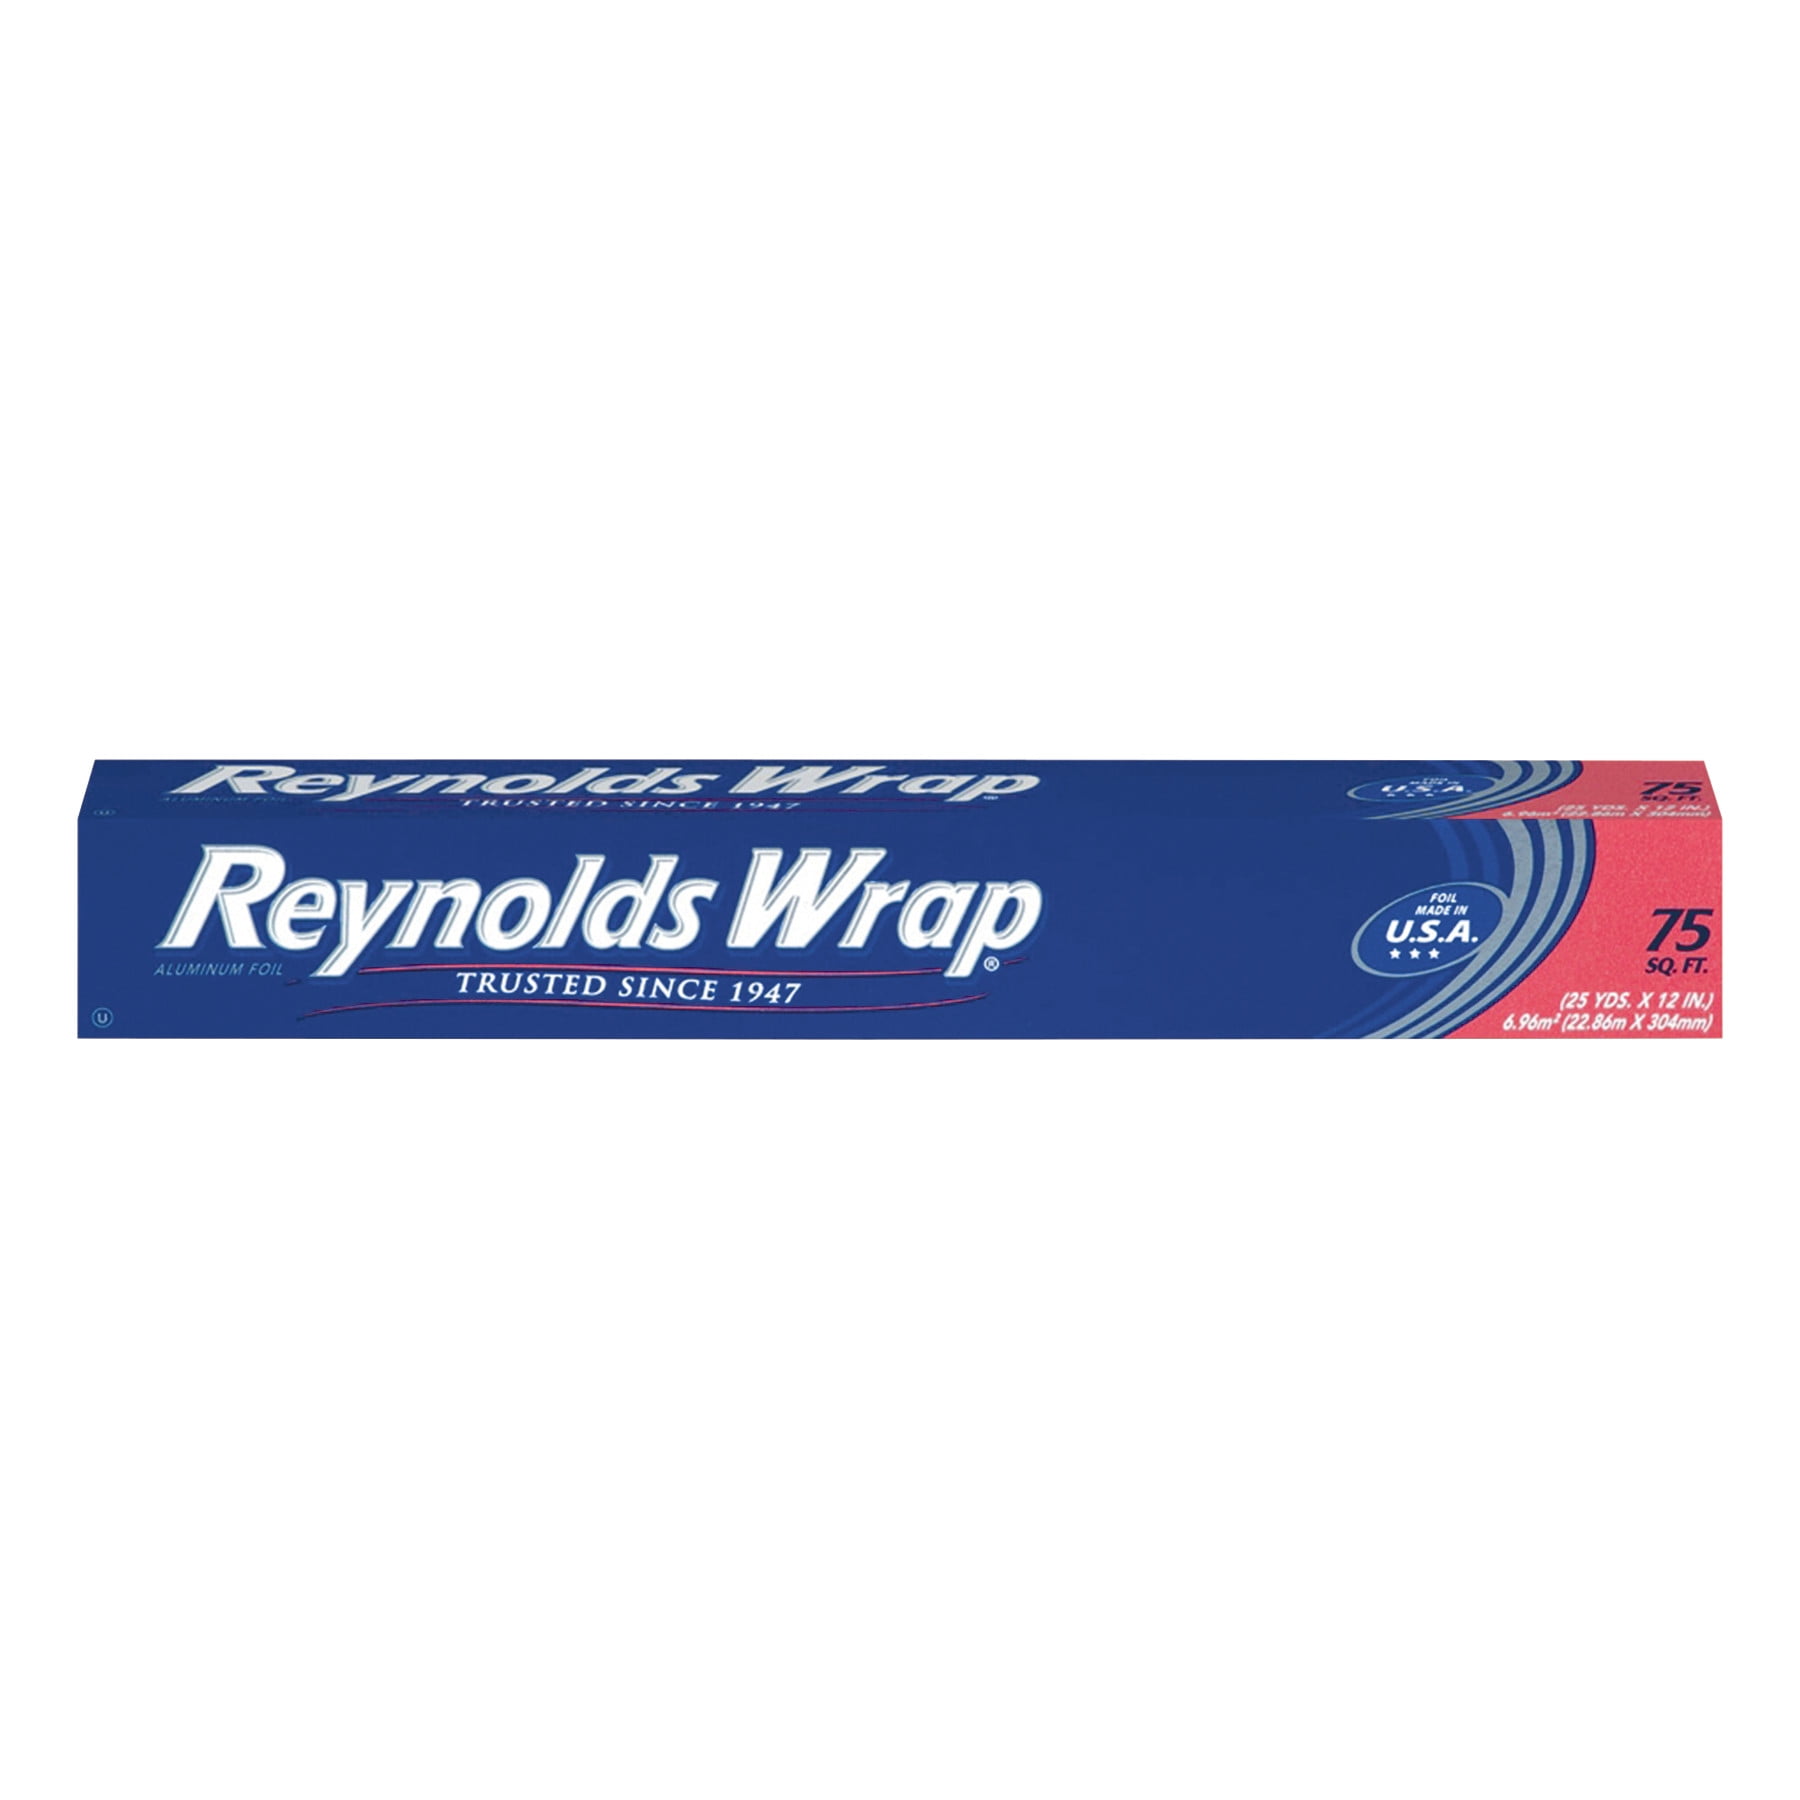 Reynolds Wrap® Heavy Duty Aluminum Foil Roll, 18 x 75 ft, Silver